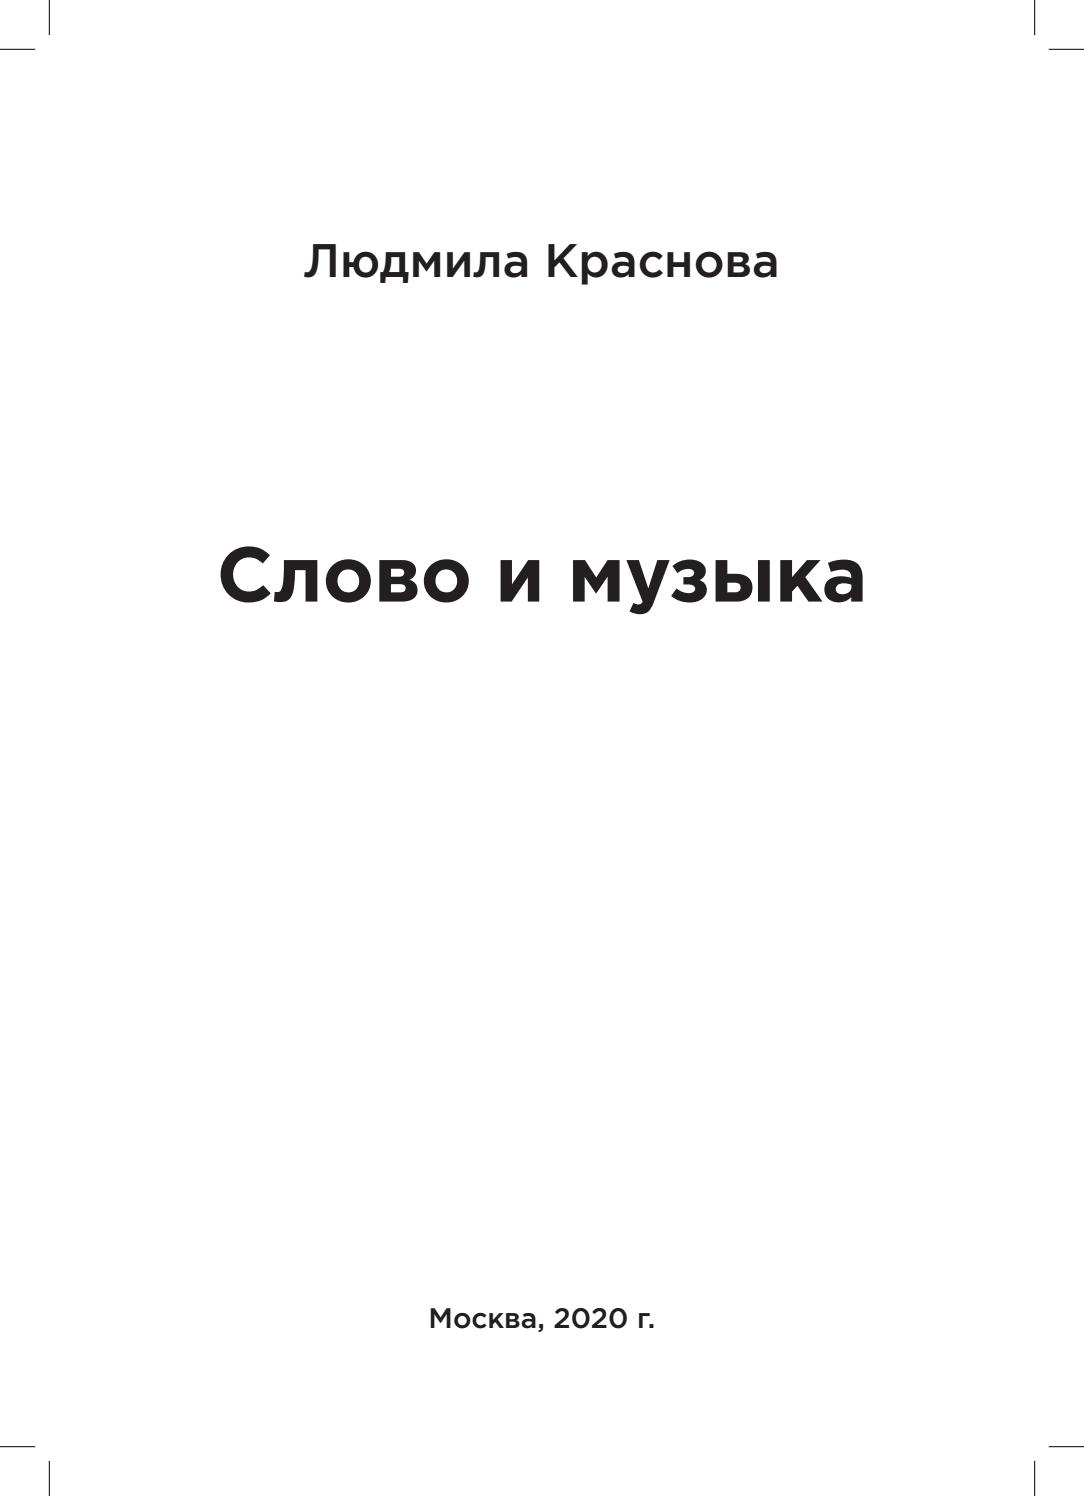 Слово и музыка, 2020, Людмила Краснова